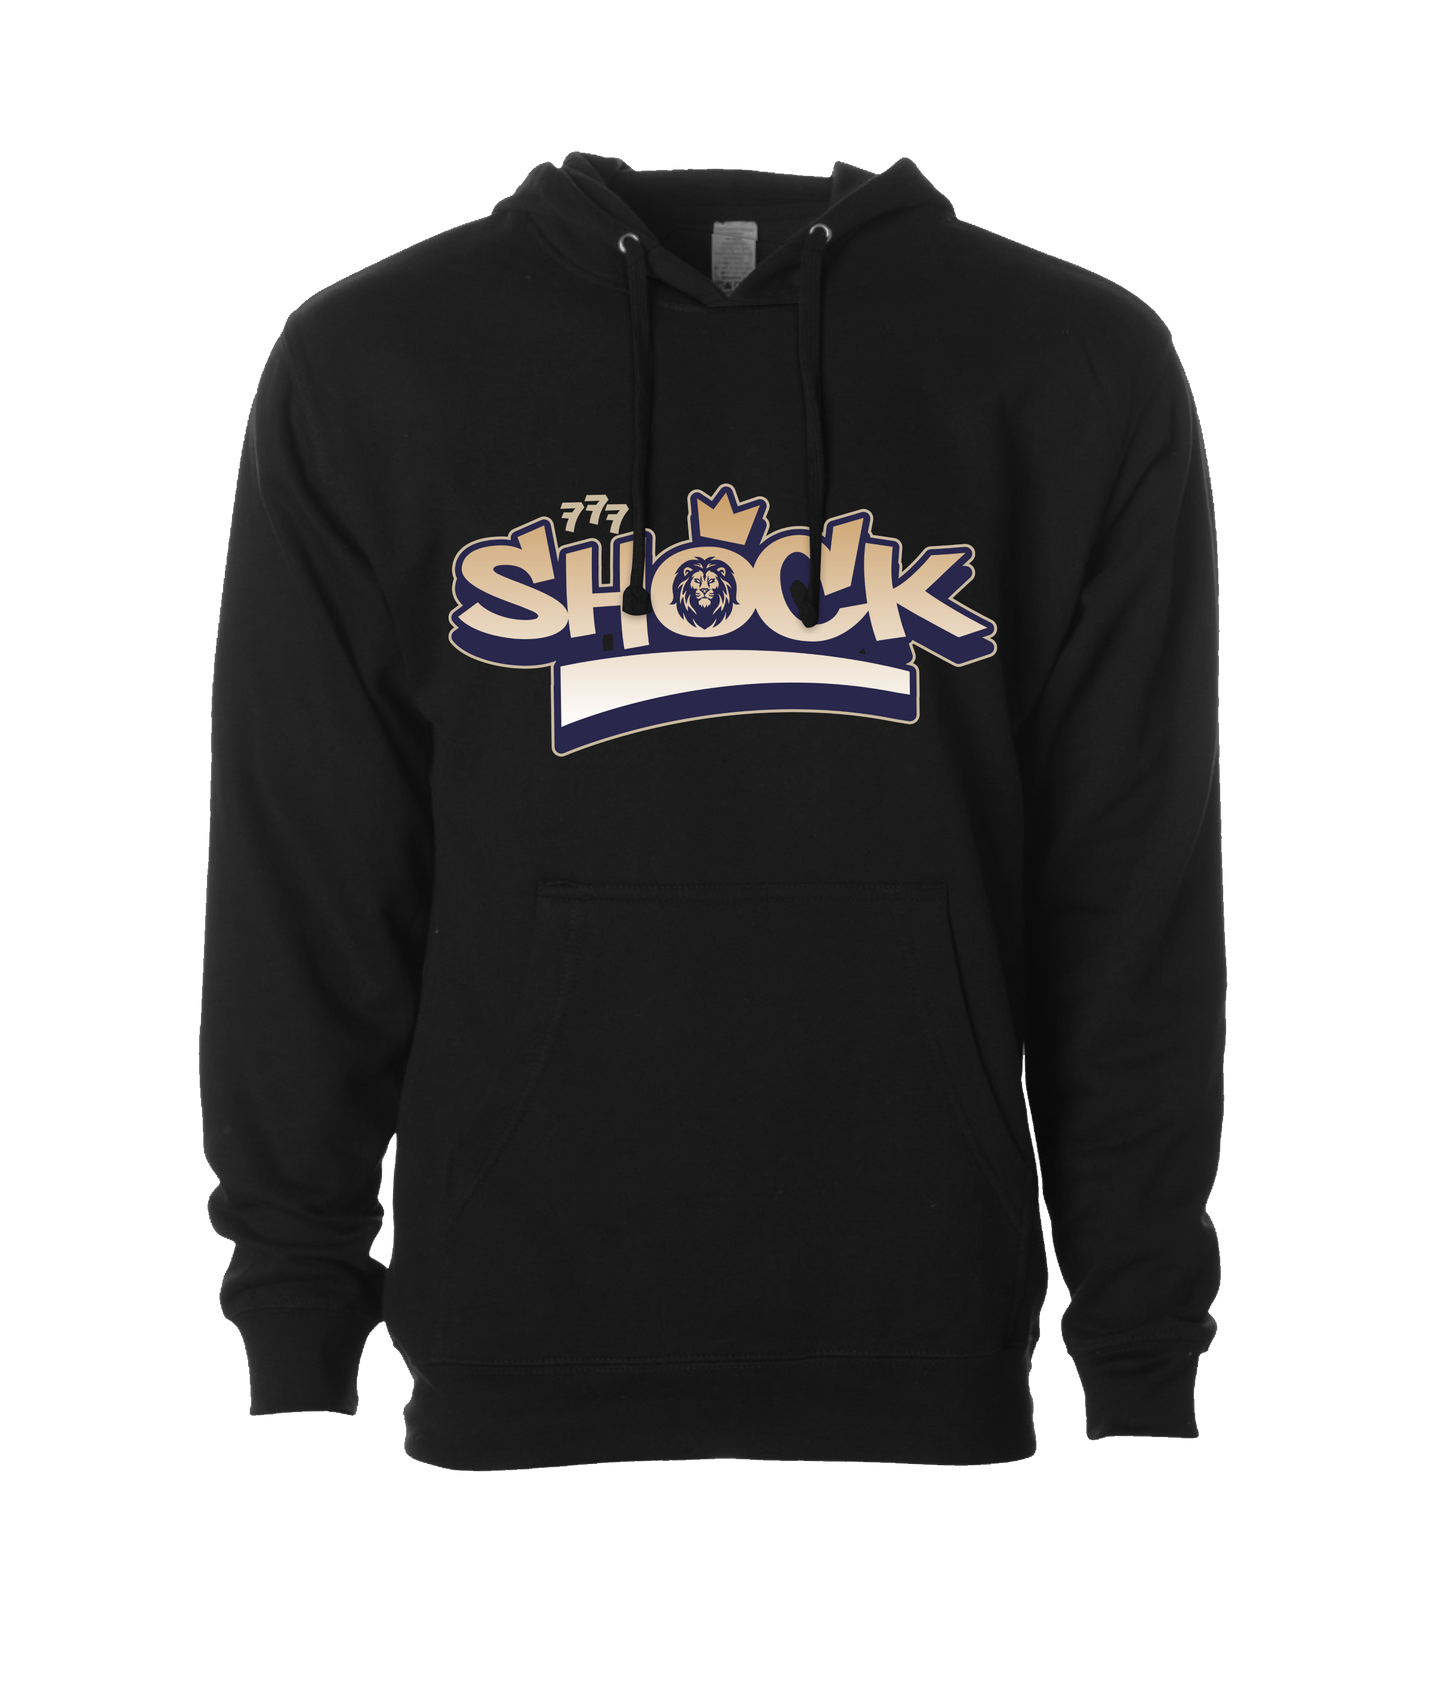 Shock - SHOCK - Black Hoodie